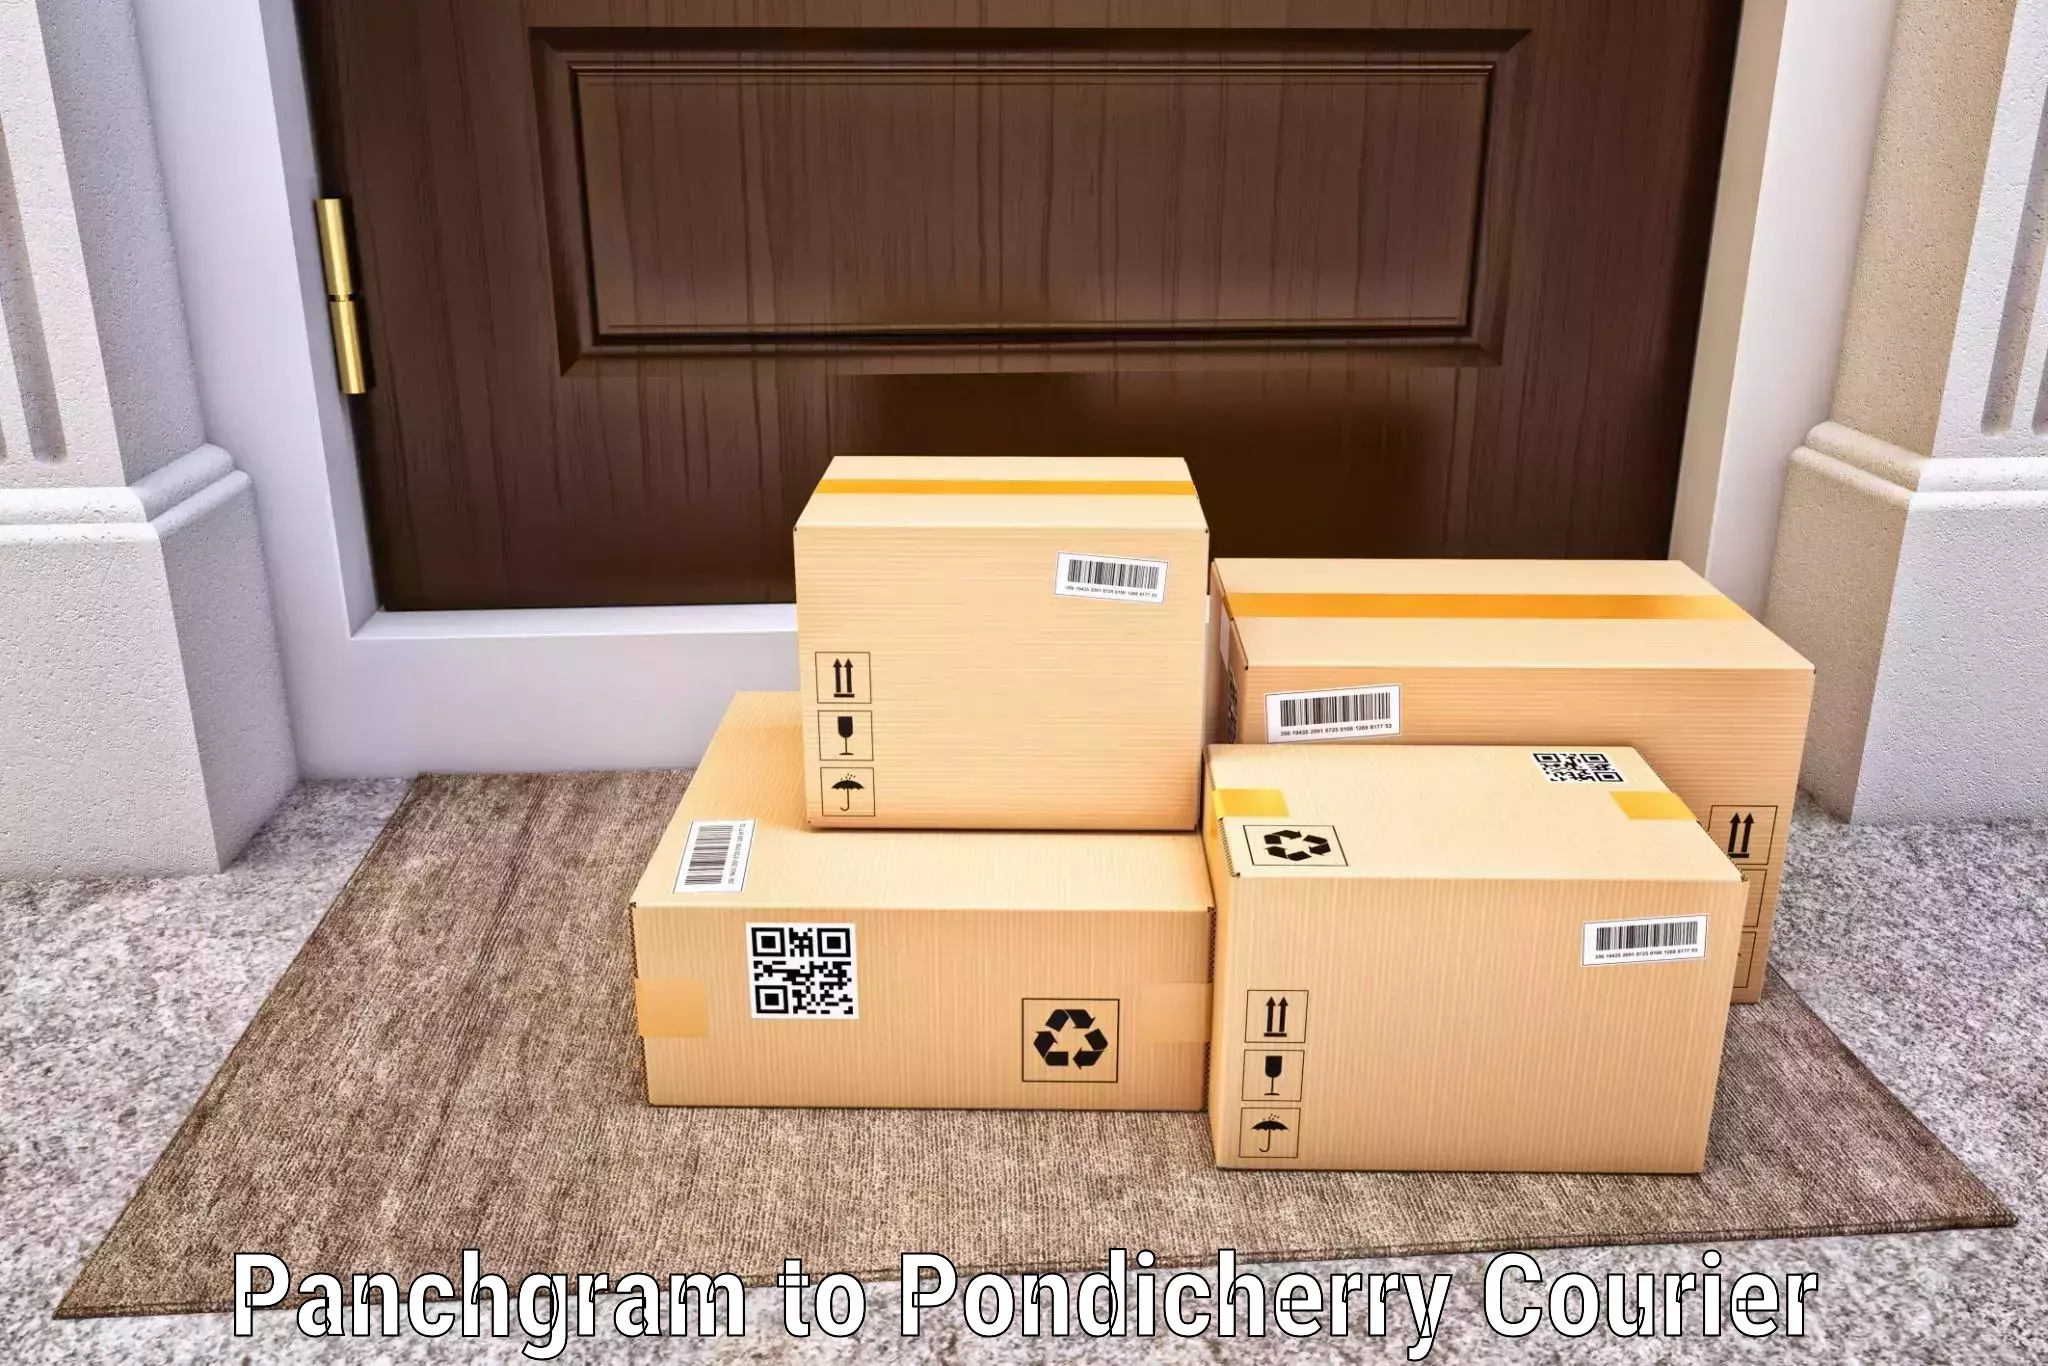 Discount courier rates Panchgram to Karaikal